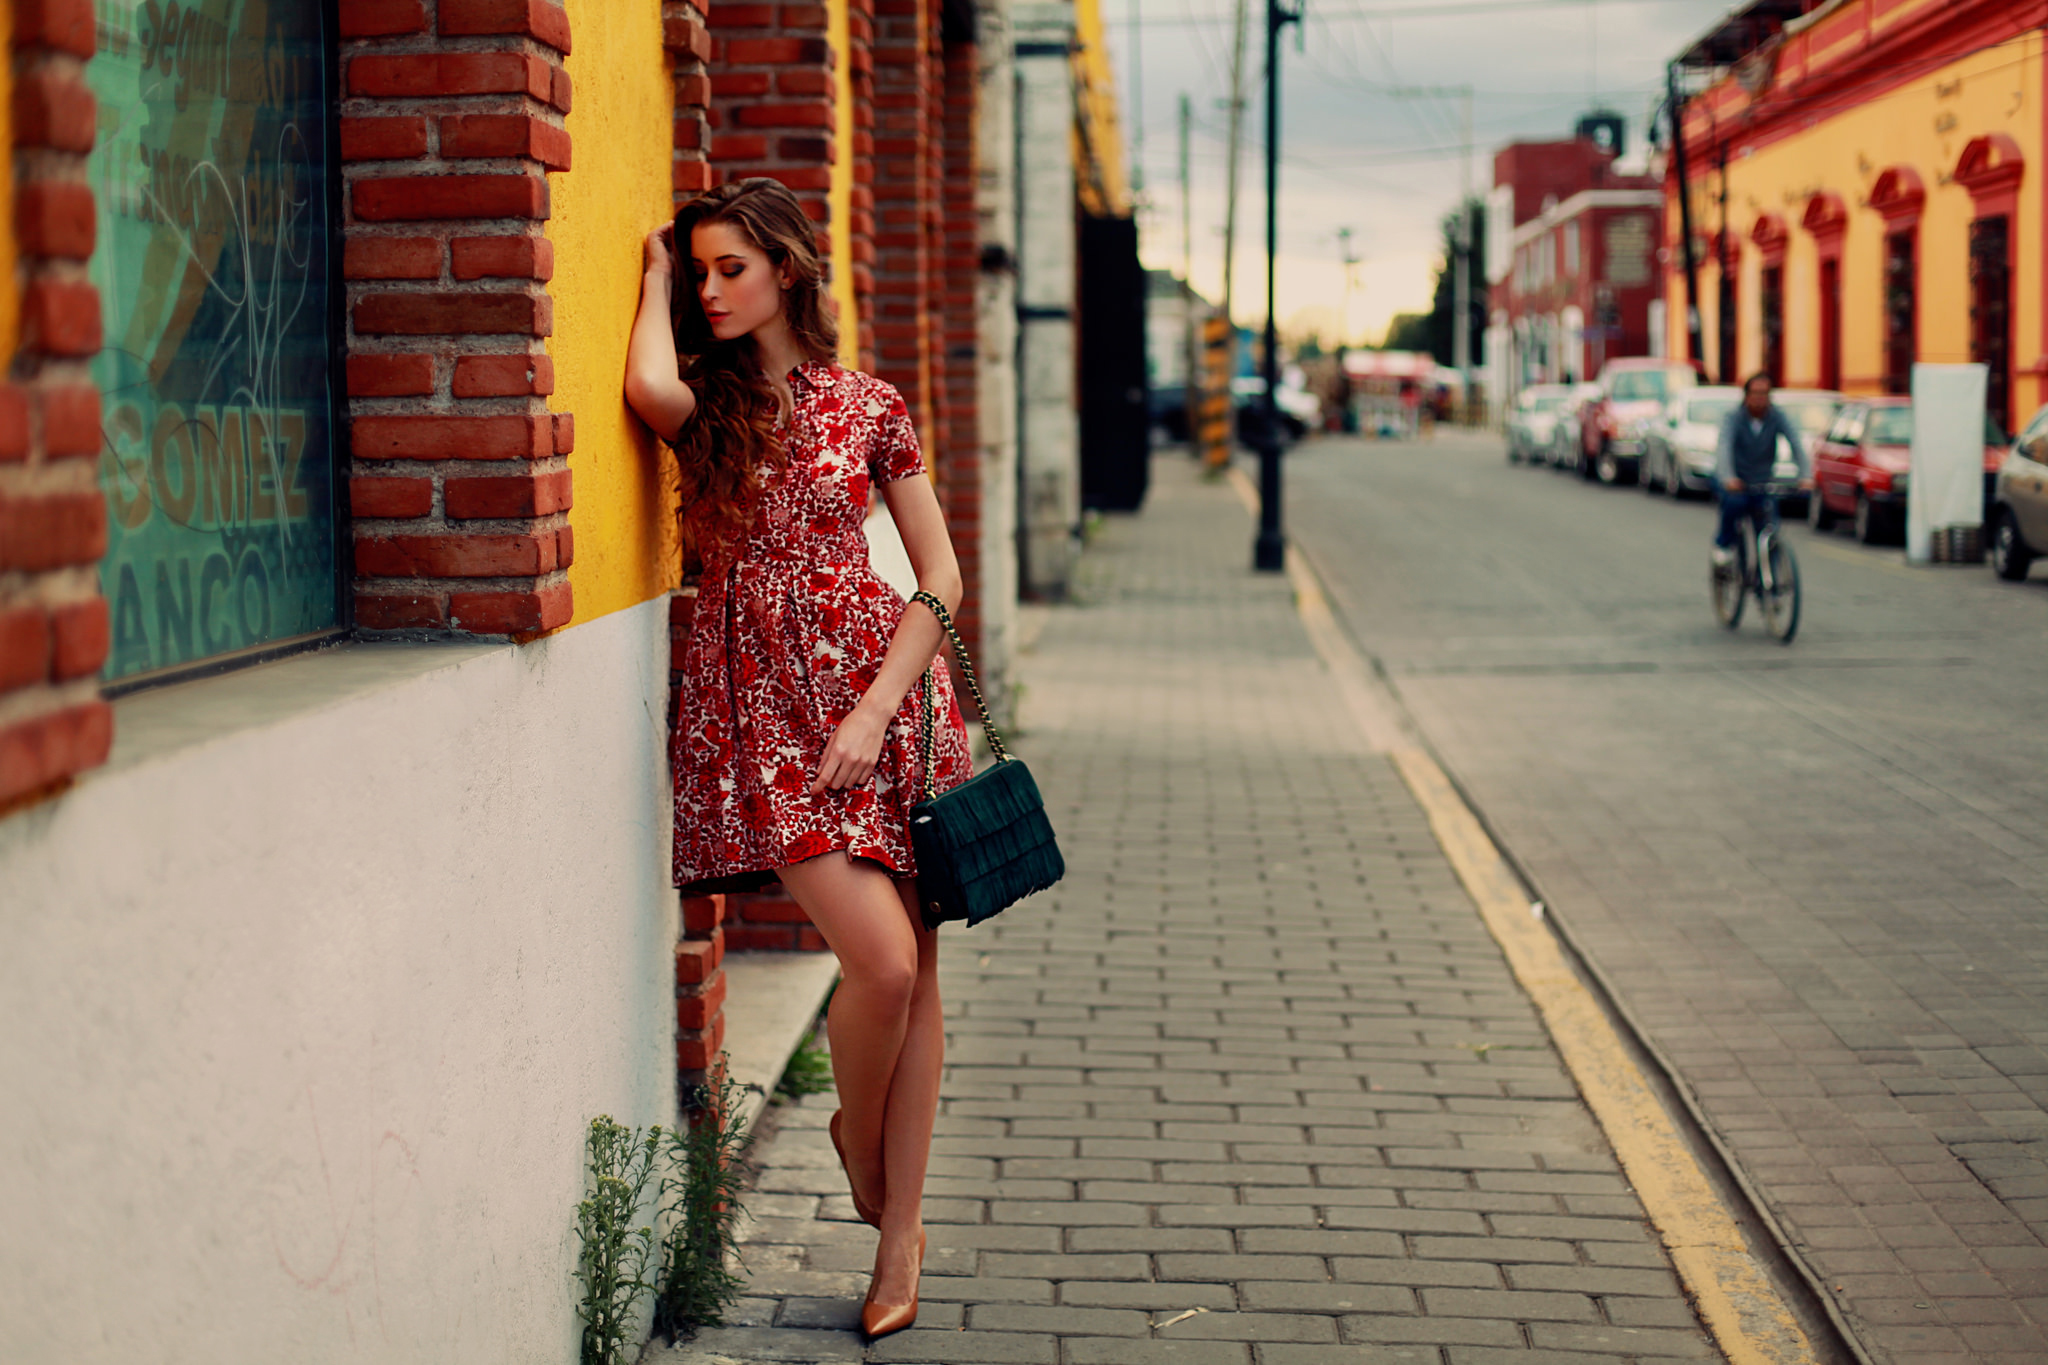 Стоит прилично. Фотосессия на улице. Девушка в платье в городе. Красивые девушки на улице. Фотосессия в платье на улице.